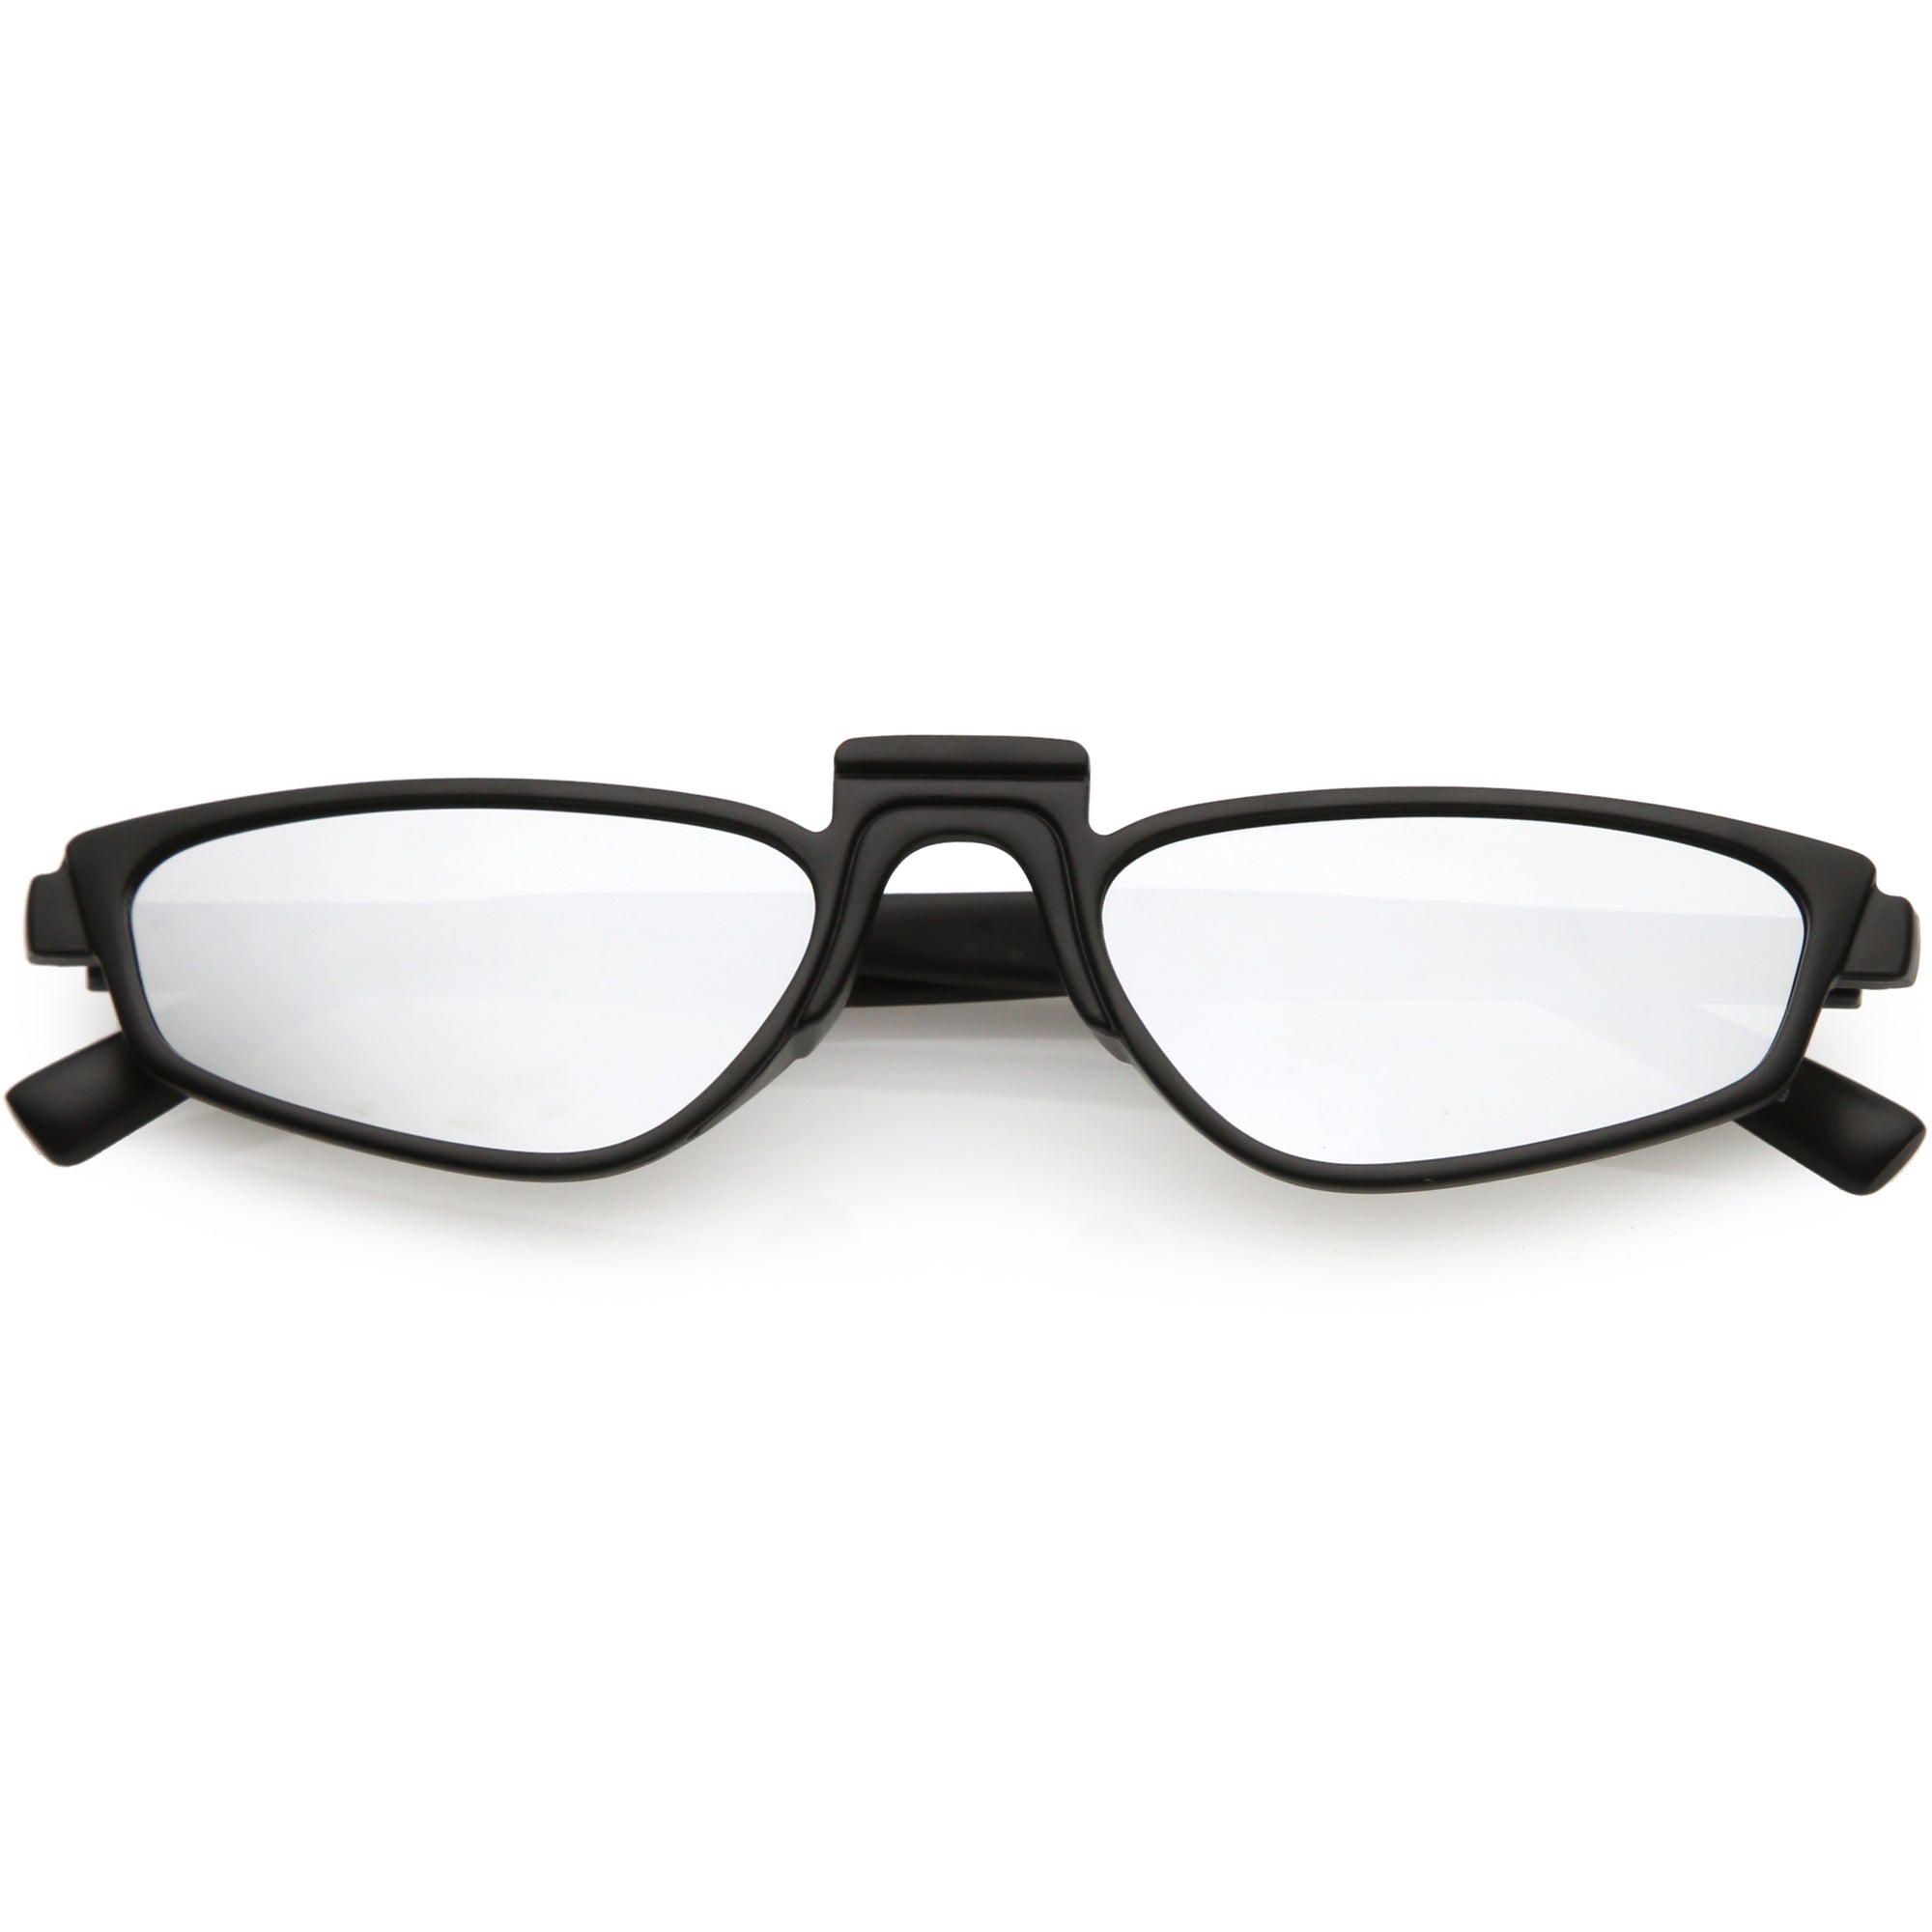 Gafas de sol estilo ojo de gato con lentes espejadas y puente bajo, estilo retro y moderno para mujer C670